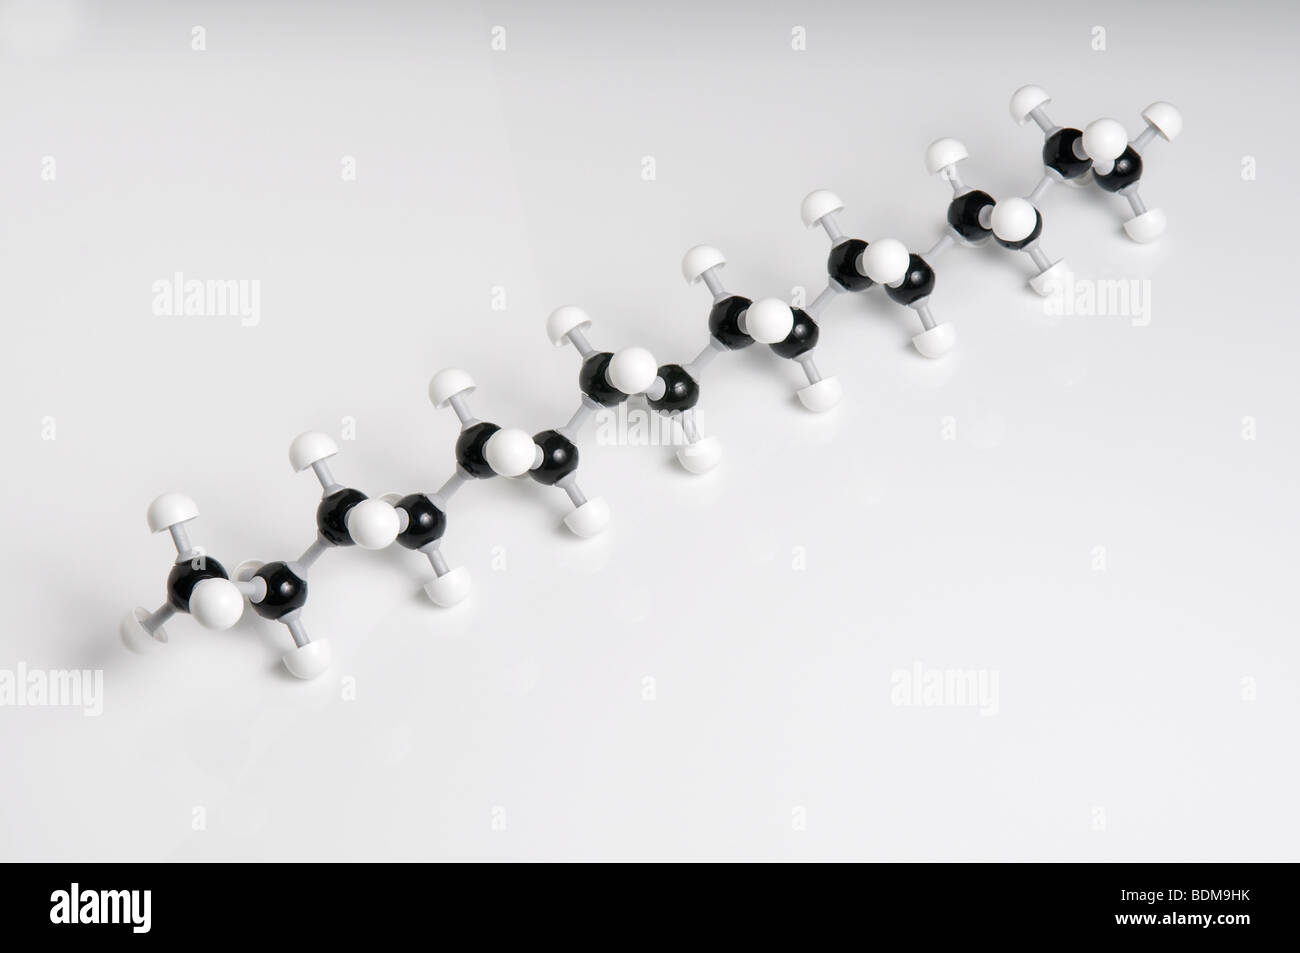 Molekulare 3D-Modell Diesel. Stockfoto